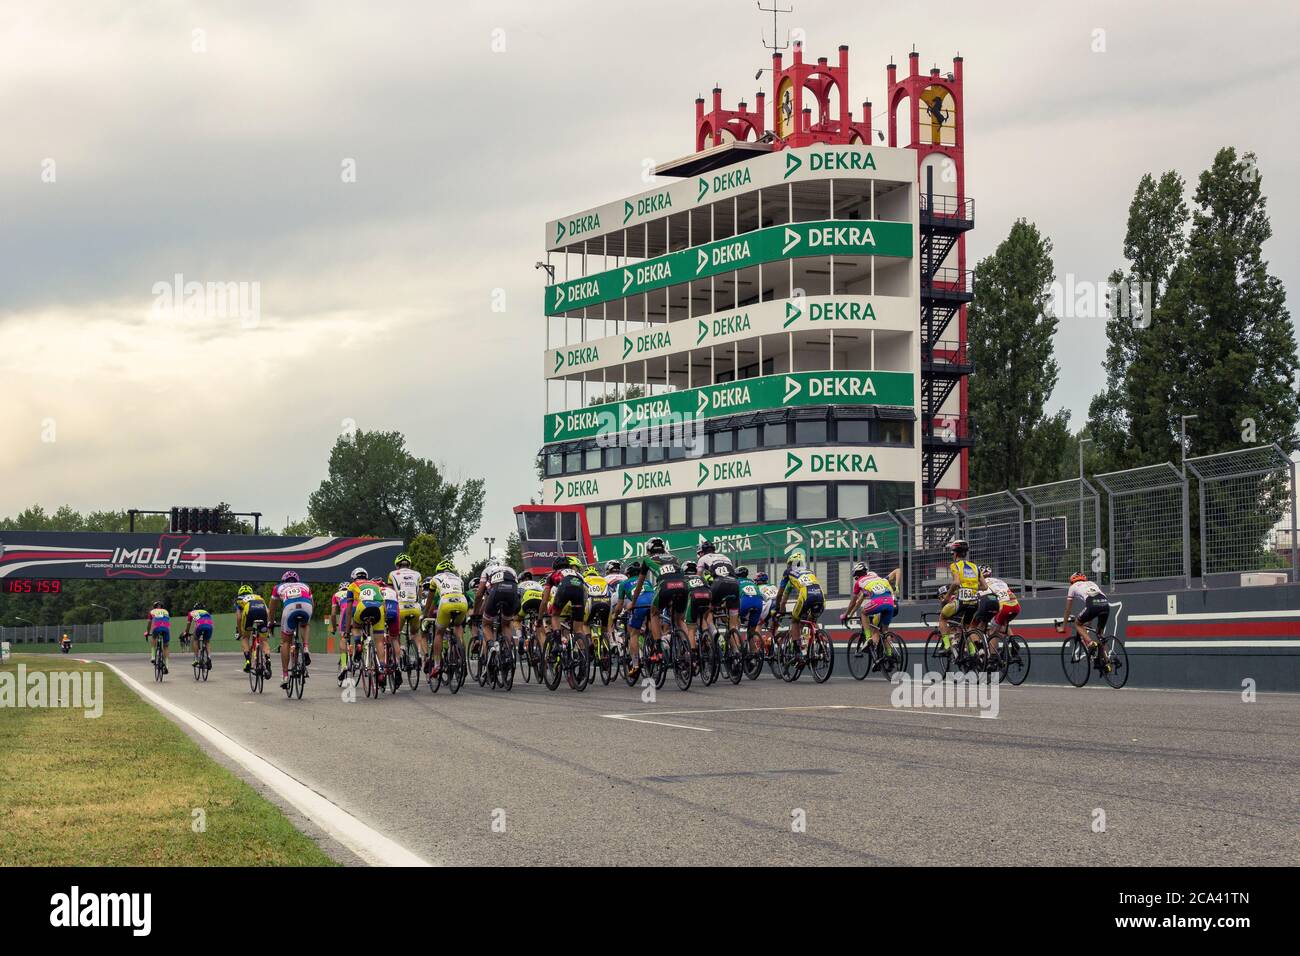 IMOLA: zyklischer Wettbewerb im 'Autodromo von Enzo e Dino Ferrari' in Imola. Öffentliche Veranstaltung. Stockfoto